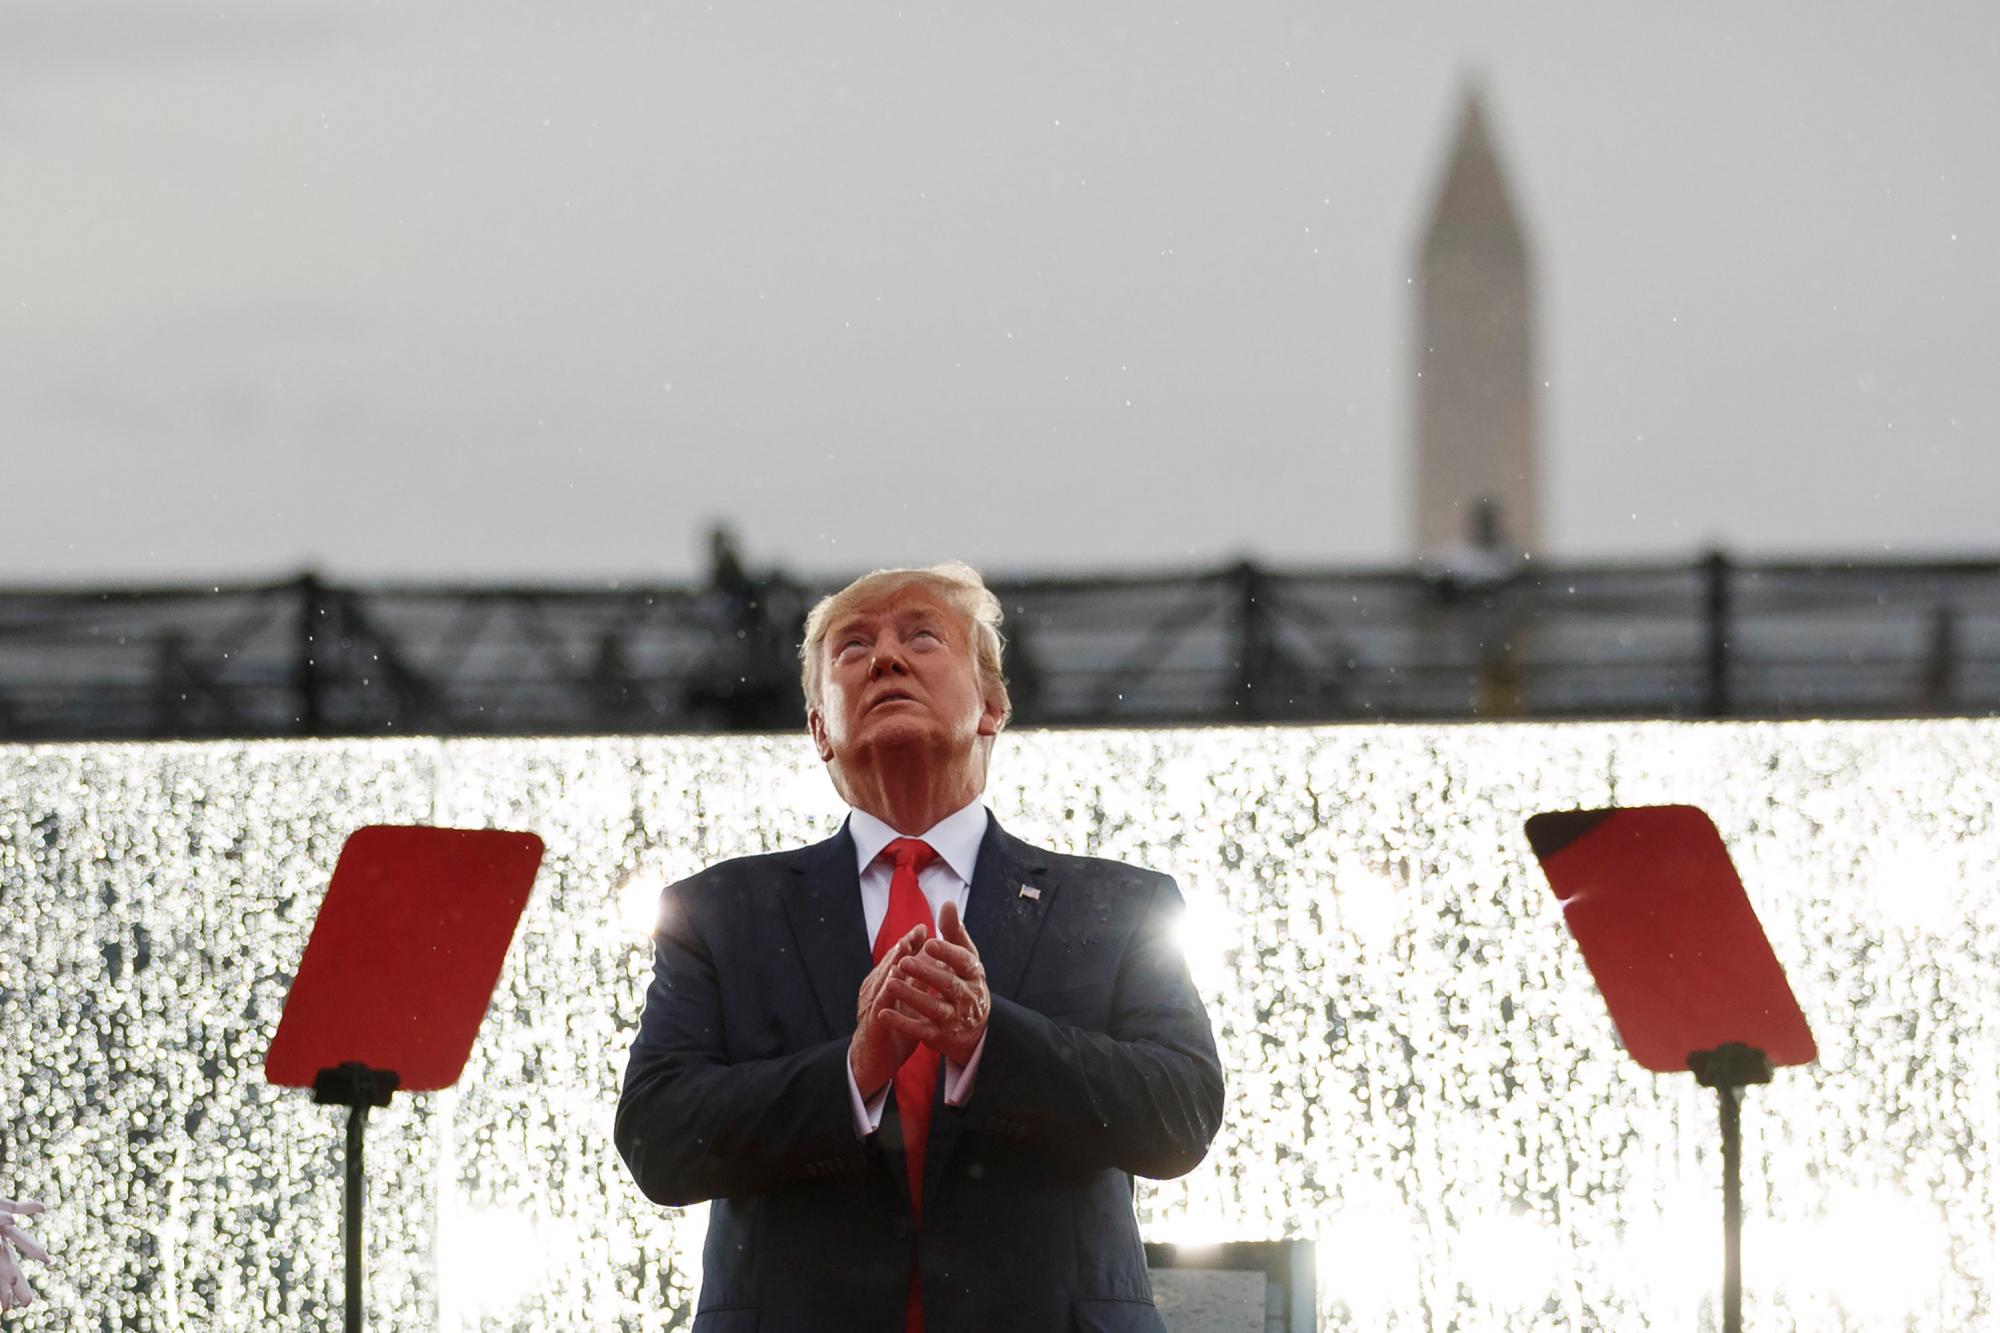 El presidente Donald Trump mira hacia arriba durante los sobrevuelos militares en la celebración del Día de la Independencia frente al Monumento a Lincoln, el jueves 4 de julio de 2019, en Washington. El Monumento a Washington está en el fondo. 